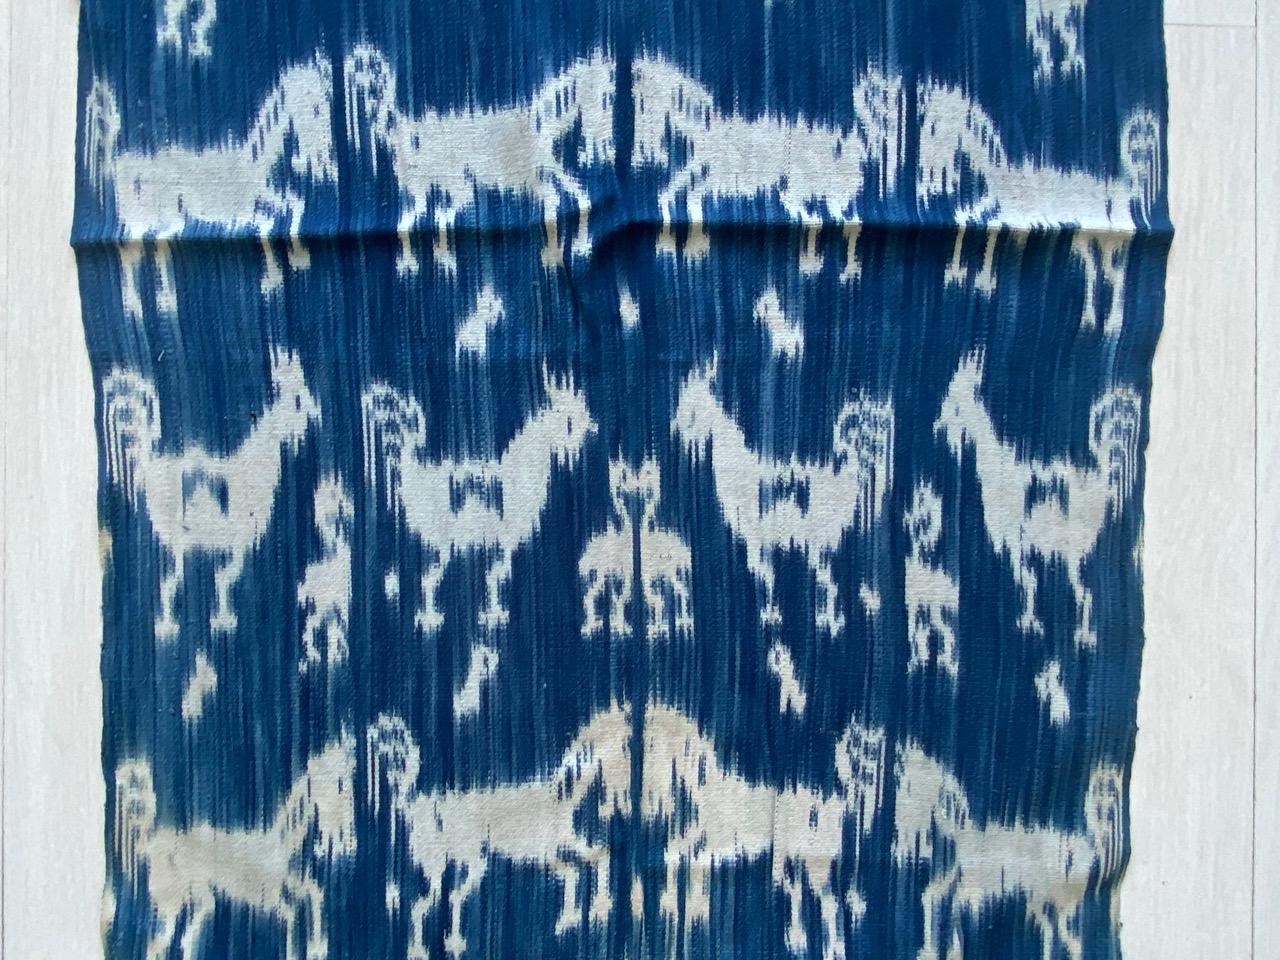 Antikes indigoblaues und weißes Textil aus Sumba. Die perfekte Größe, um sie als Schal zu tragen. Mythische Figuren, Pferde und Vögel vermischen sich in diesem grafischen Textil. Ikat ist eine alte Technik, mit der Textilien mit Mustern versehen